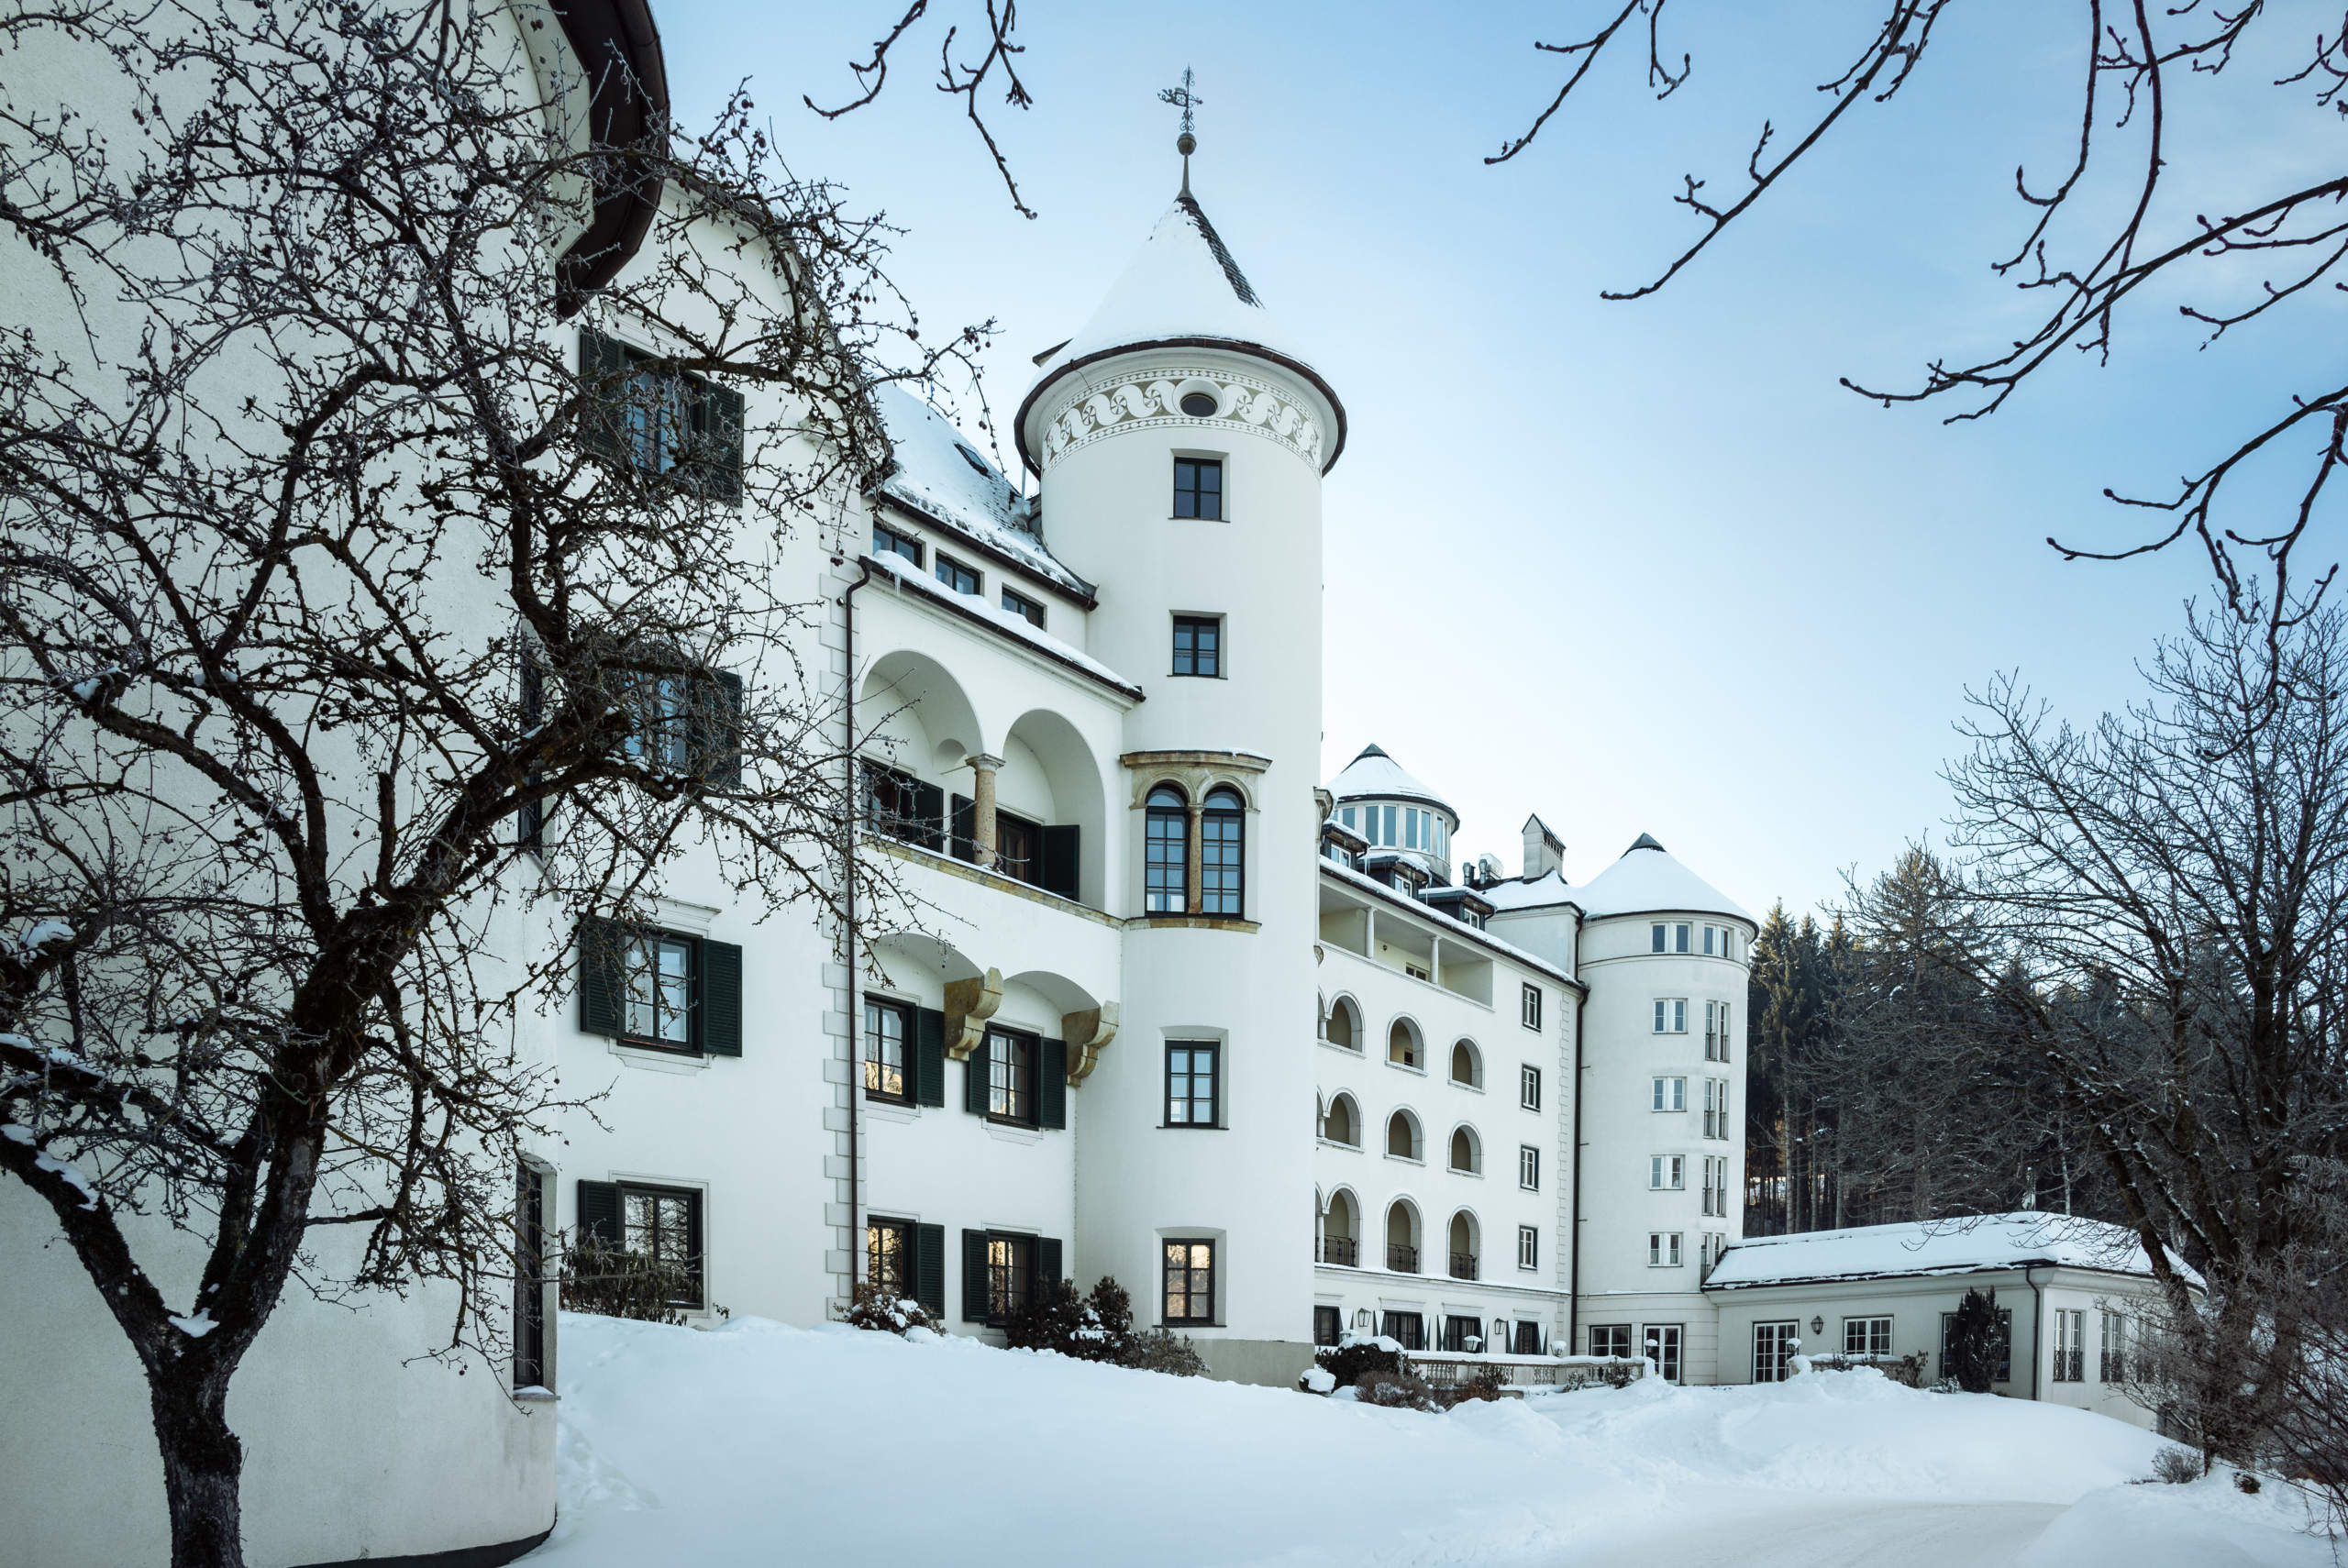 IMLAUER Hotel Schloss Pichlarn | 5-Sterne Hotel Österreich